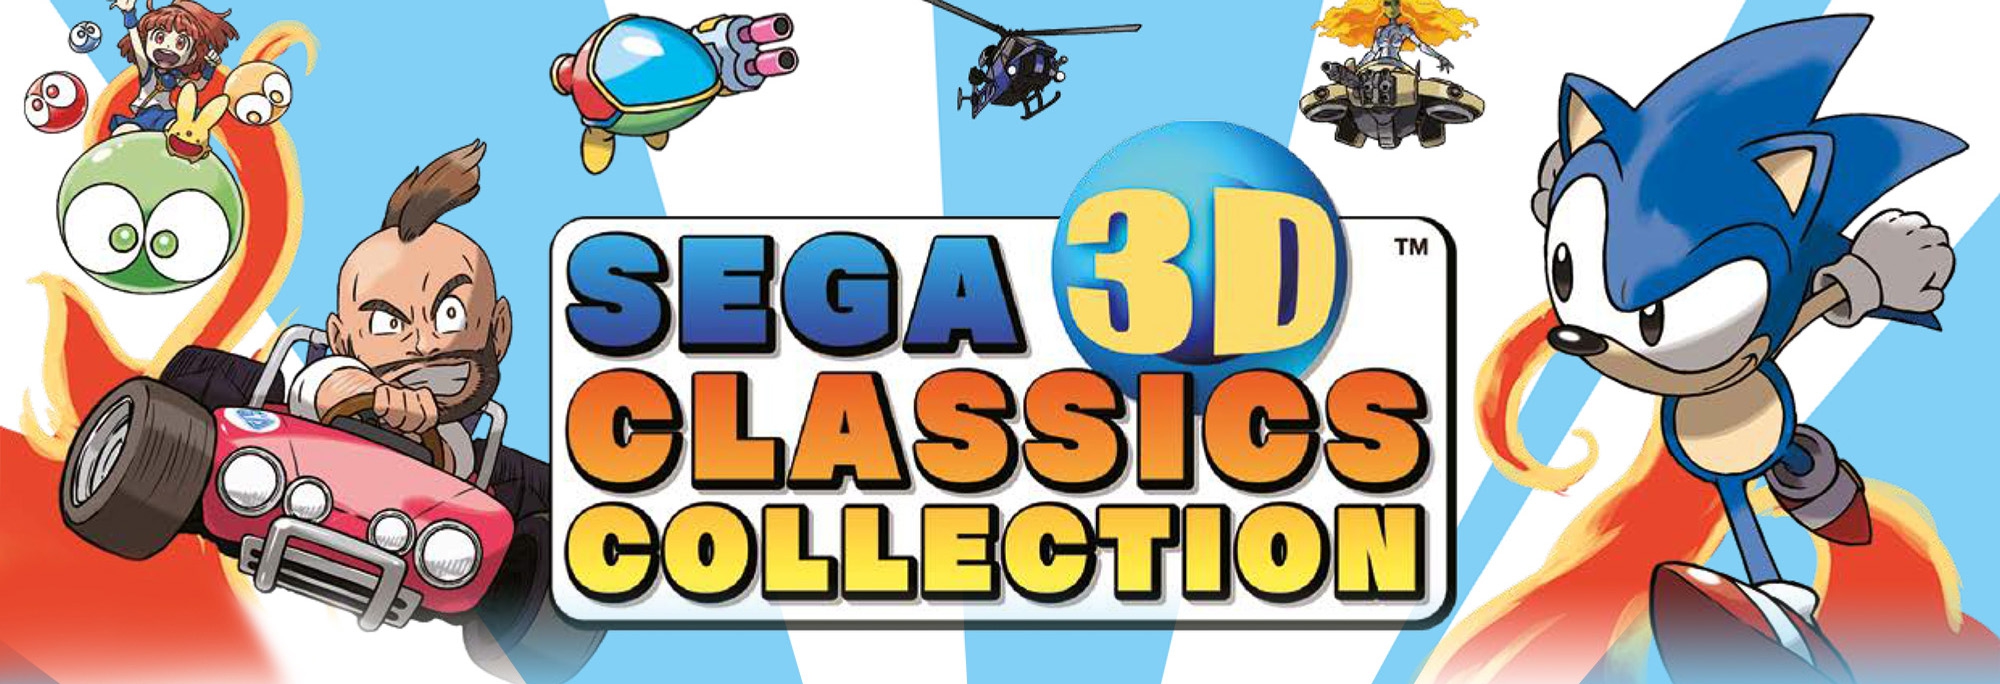 Banner Sega 3D Classics Collection